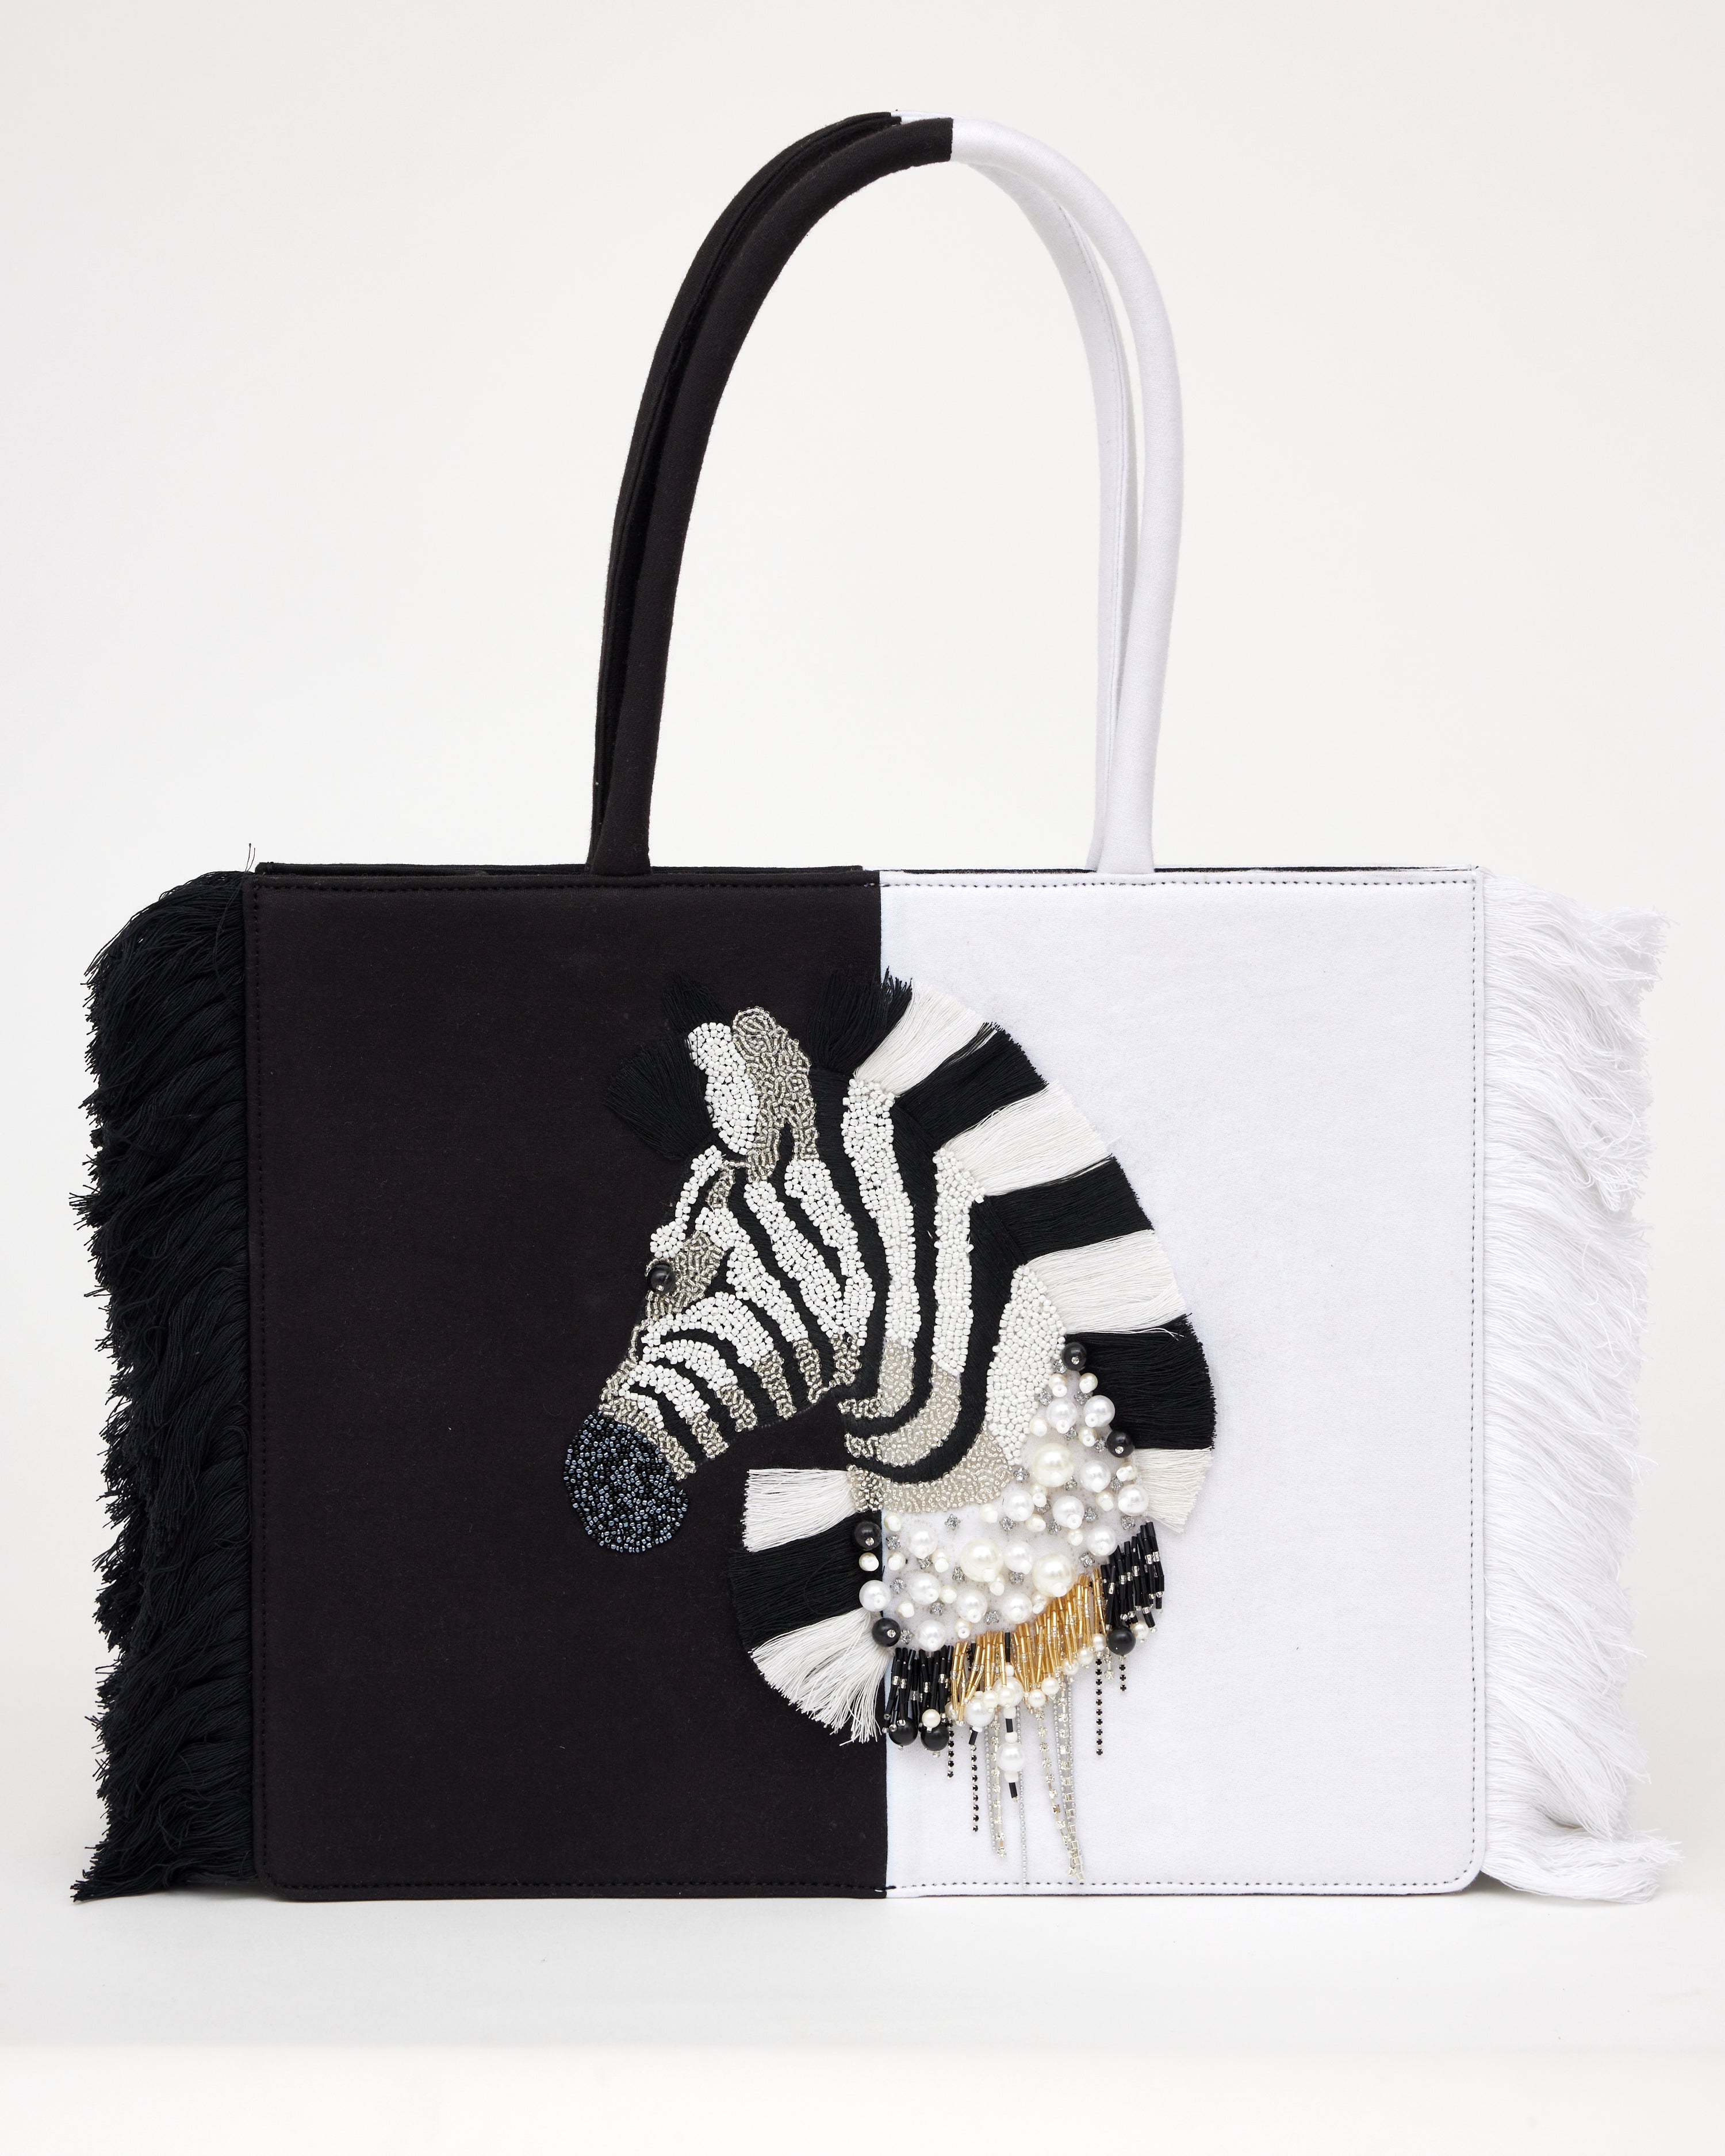 No Boundaries Women's Contemporary Tote Crossbody Handbag, Black and White  Zebra - Walmart.com